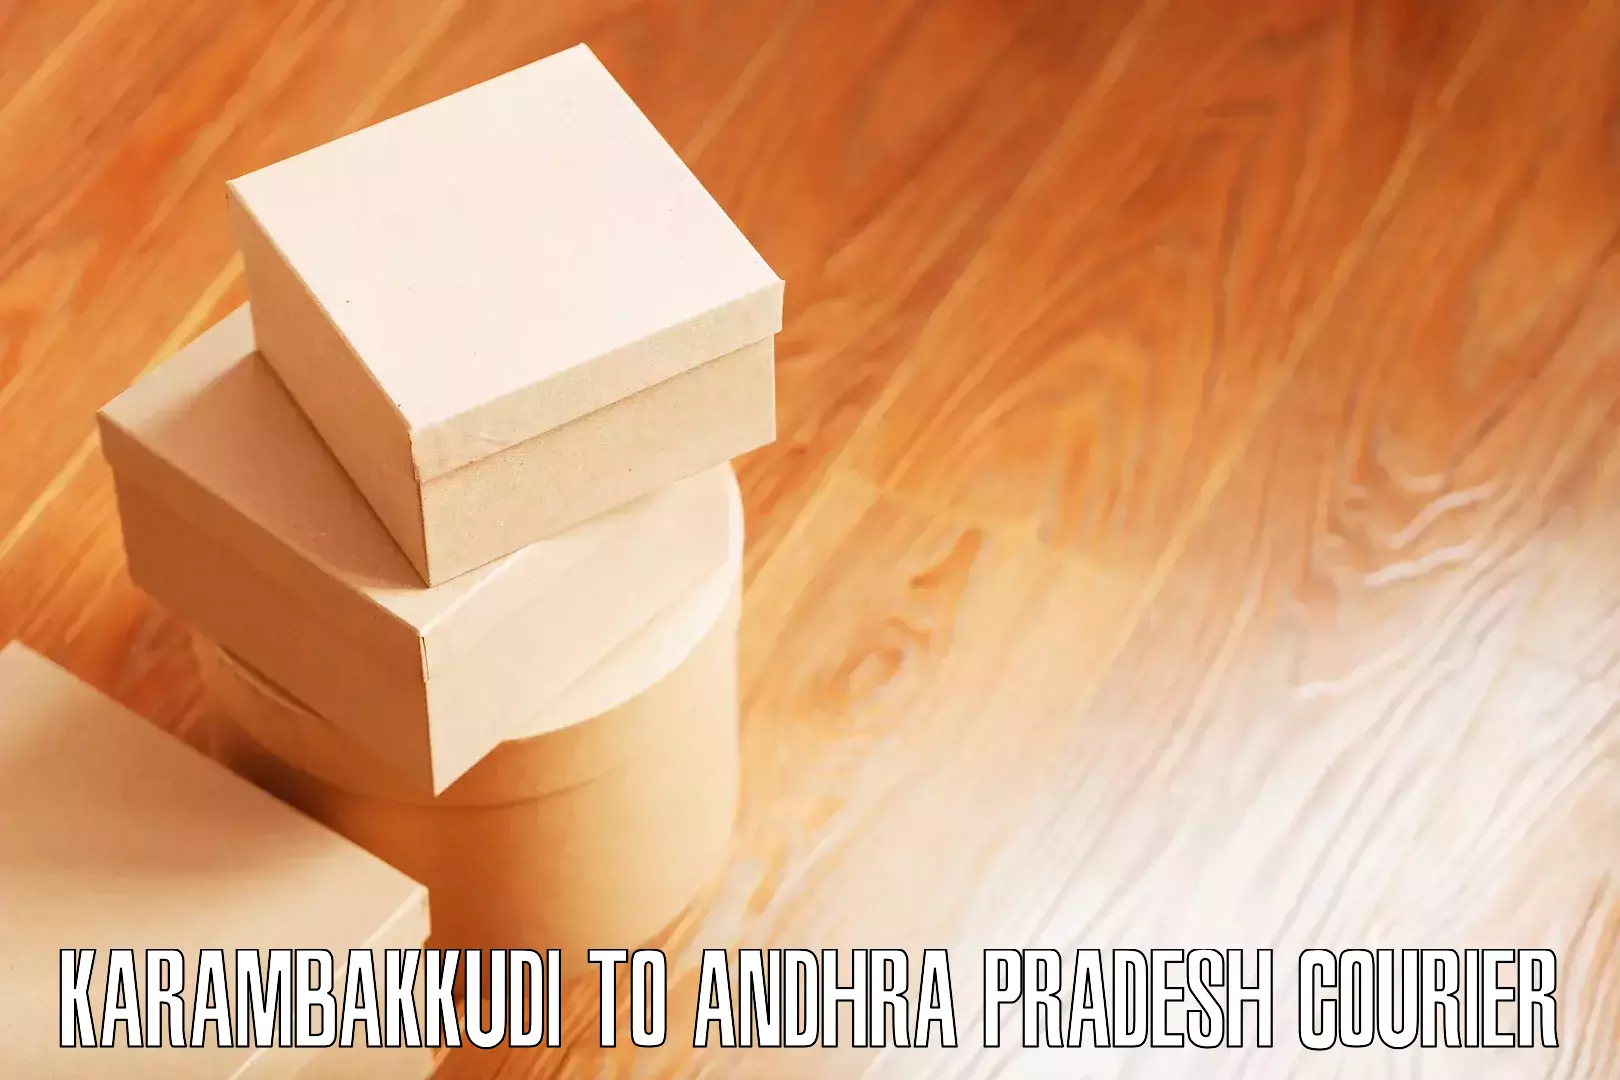 Stress-free household moving Karambakkudi to Andhra Pradesh